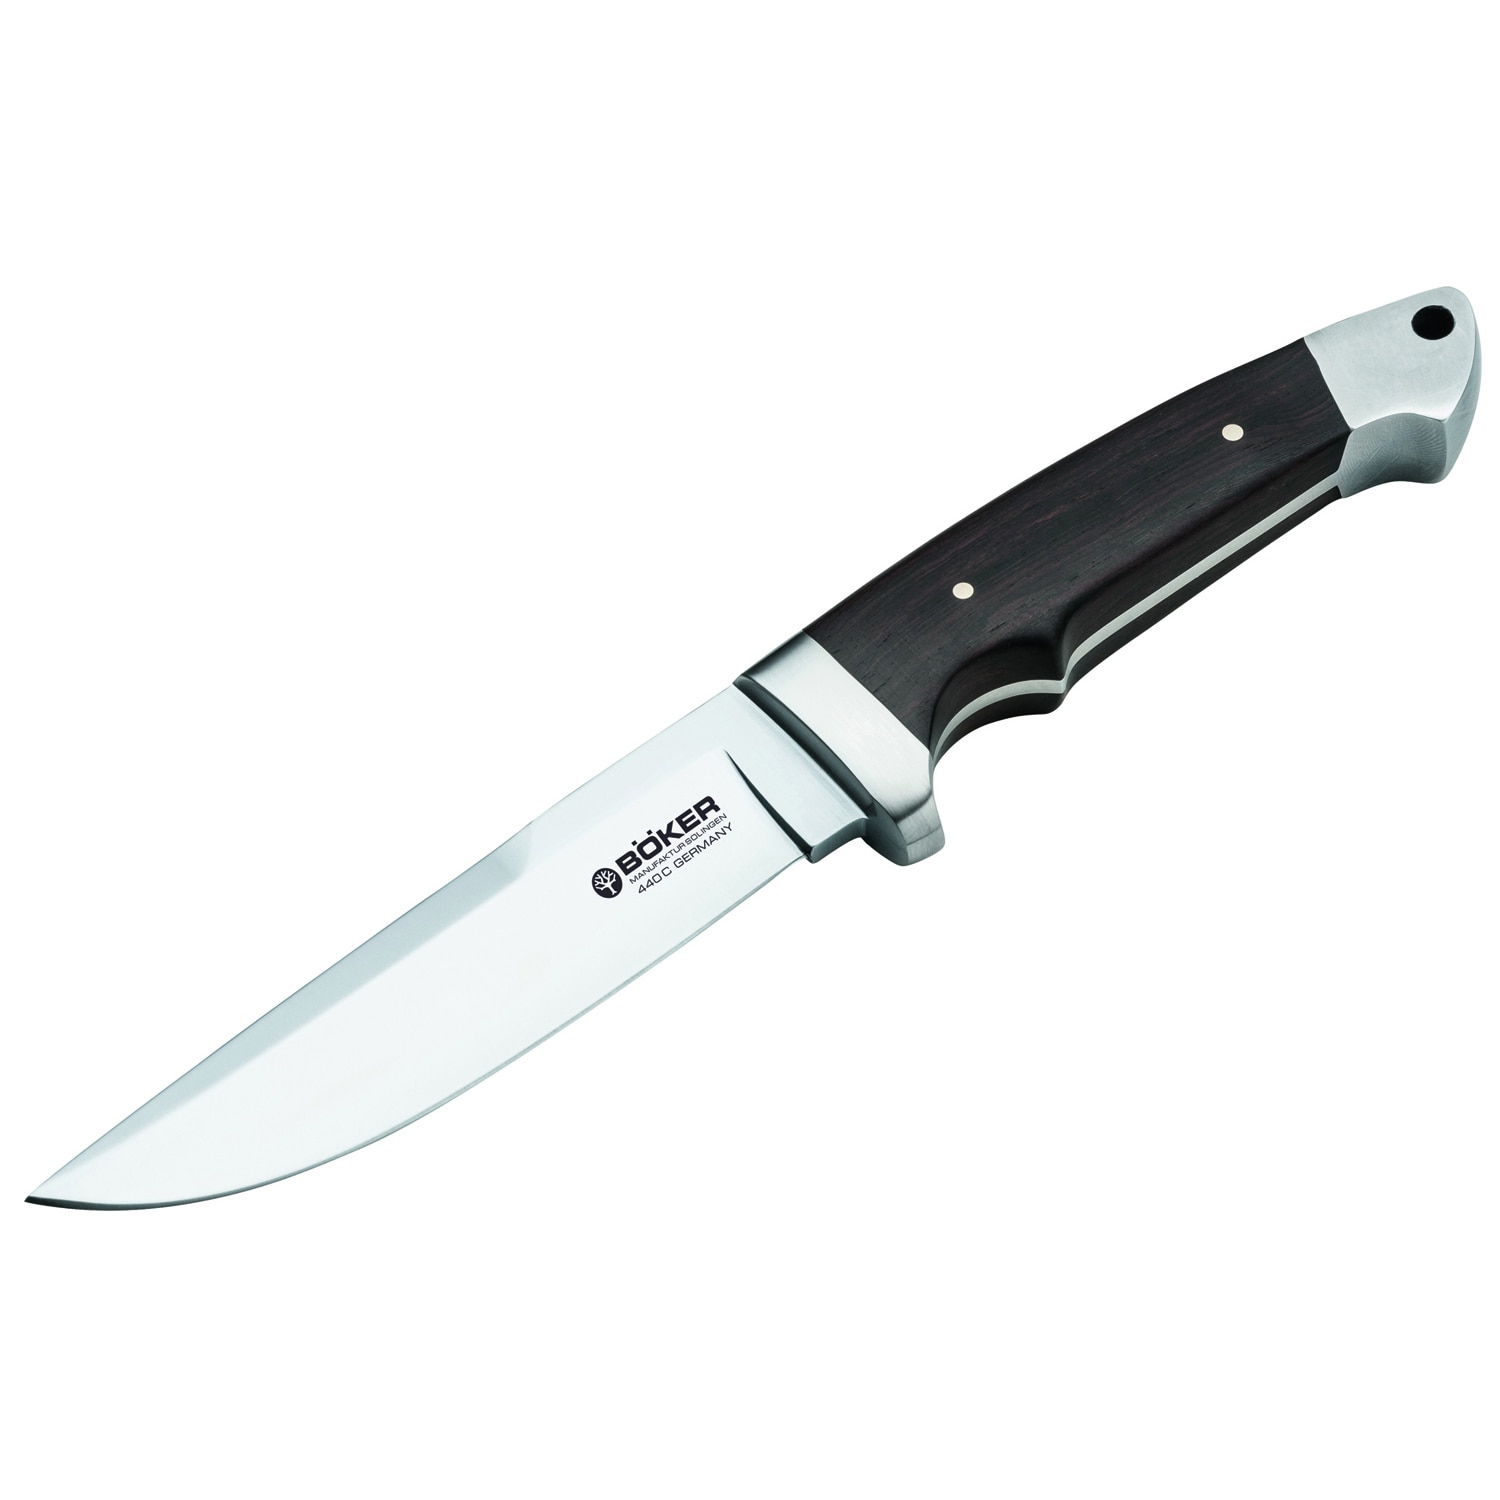 Boker Vollintegral XL Blade Knife   16610899   Shopping